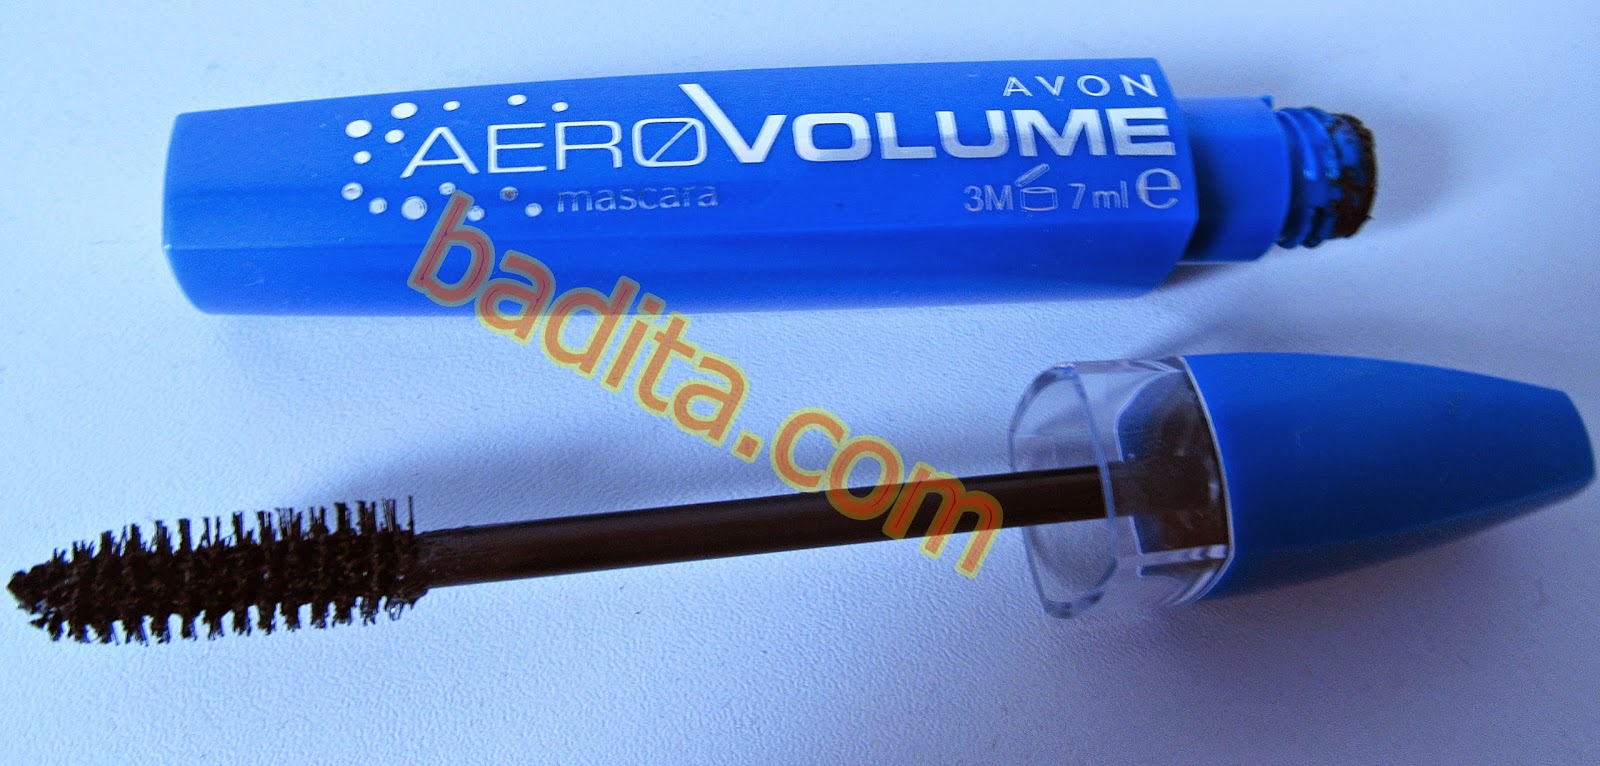 Mascara Aero Volume Avon Review